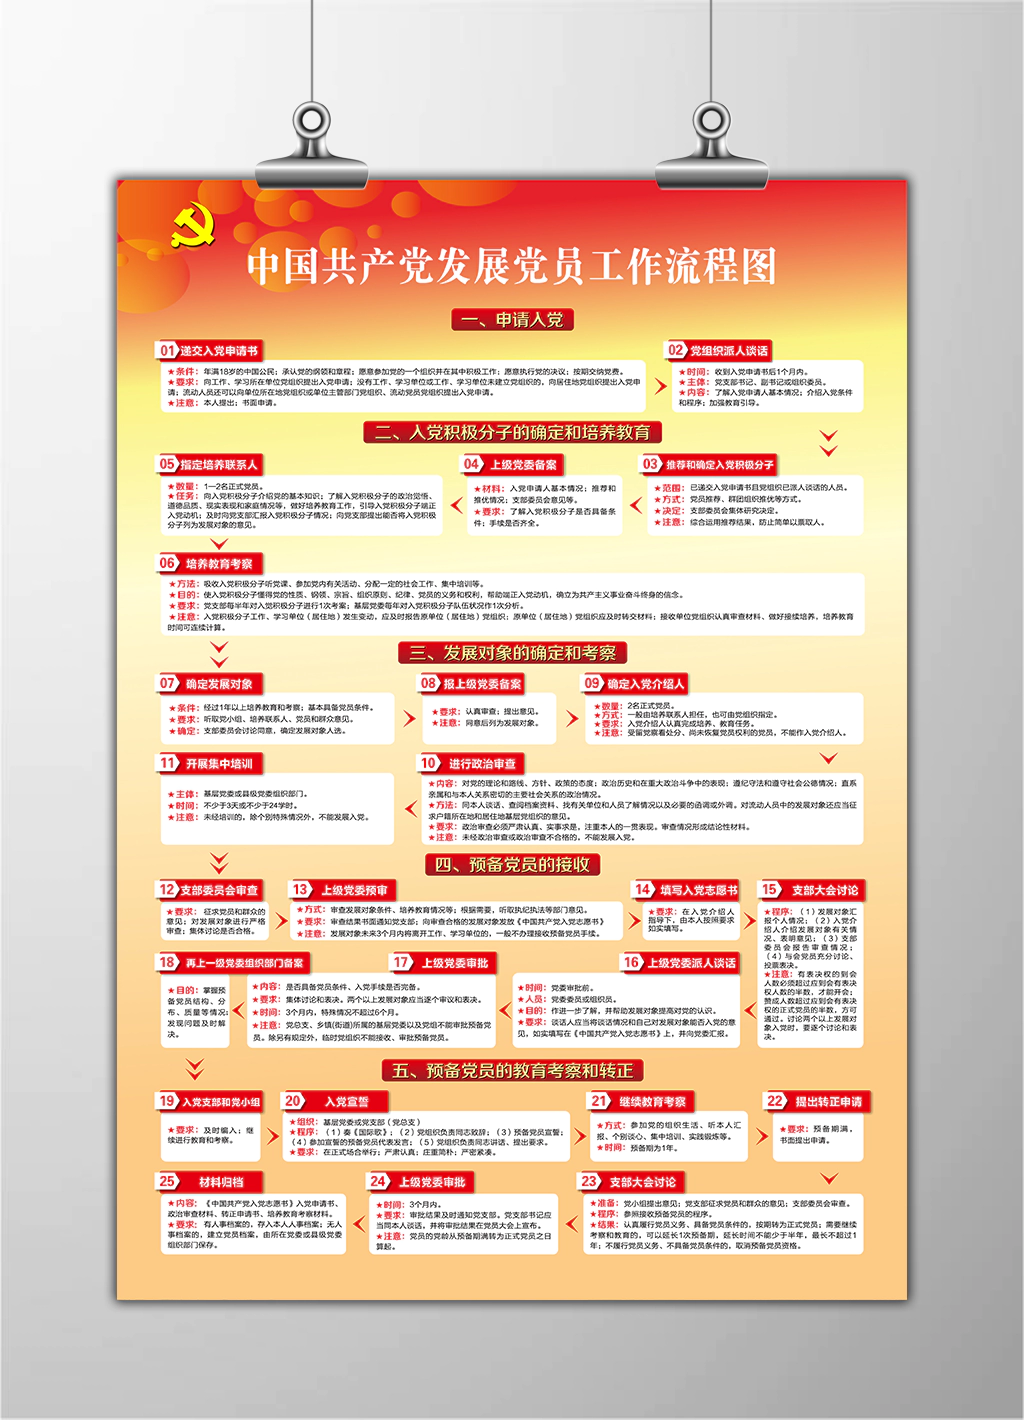 中国共产党发展党员工作流程图详细一览图宣传展板